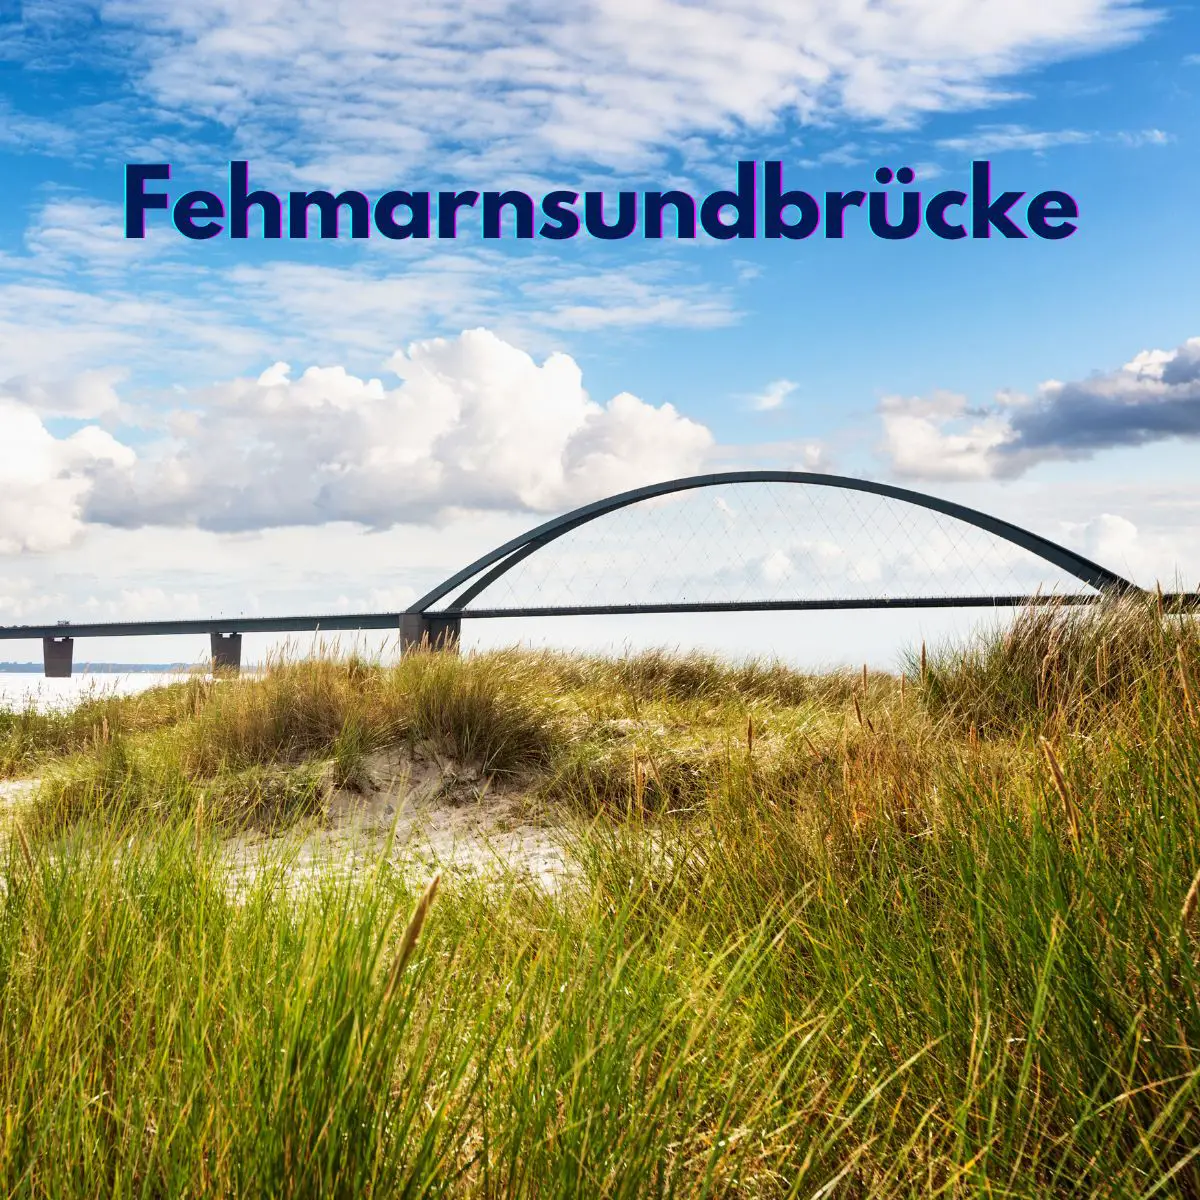 Die Fehmarnsundbrücke in Schleswig-Holstein.